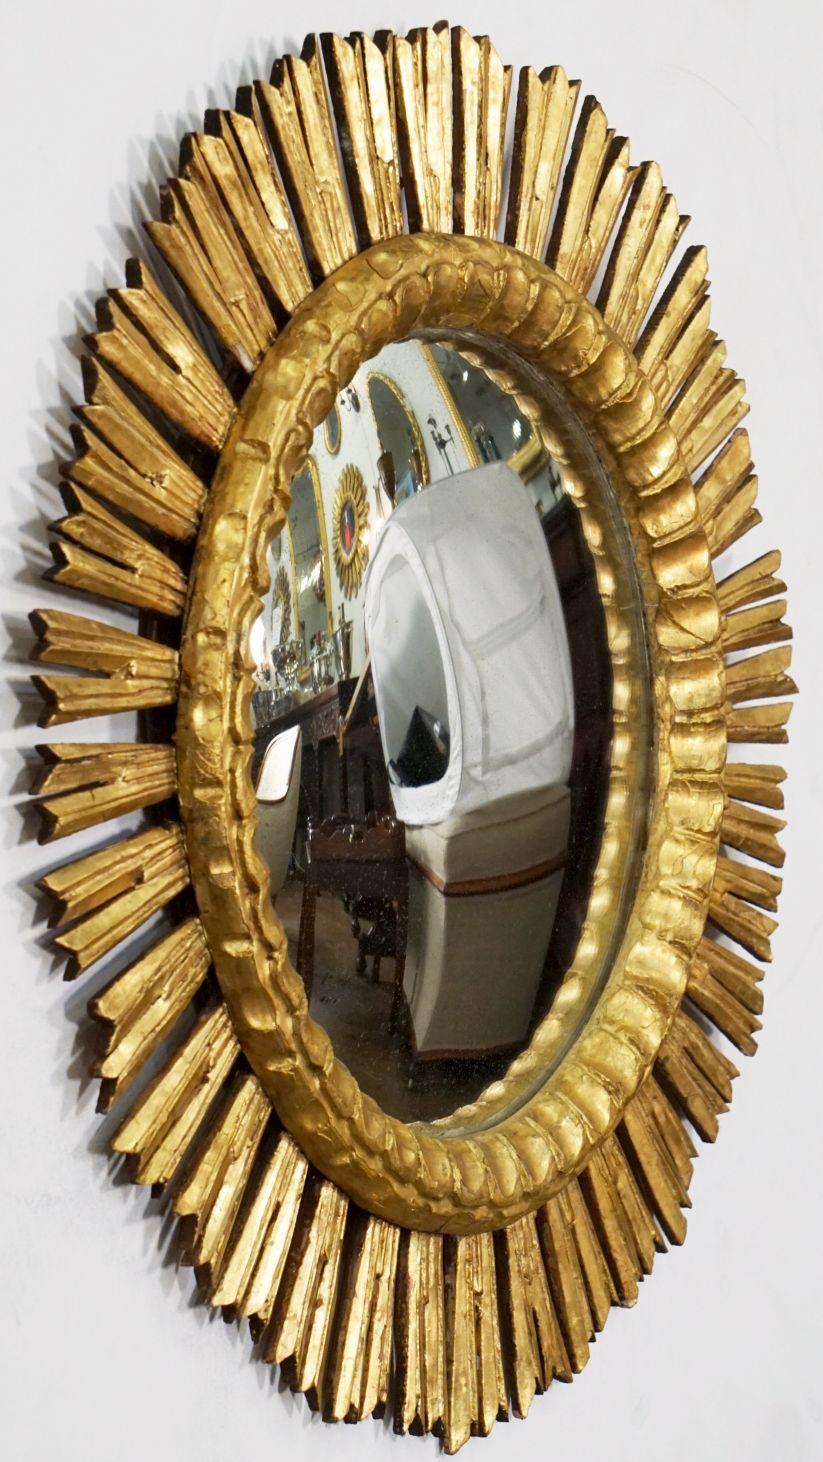 Eine schöne große spanische vergoldete Sunburst oder Starburst konvexen Spiegel, 25 Zoll Durchmesser, mit runden verspiegelten konvexen Glas Zentrum in einem geformten Rahmen durch ausstrahlende vergoldeten Strahlen umgeben.